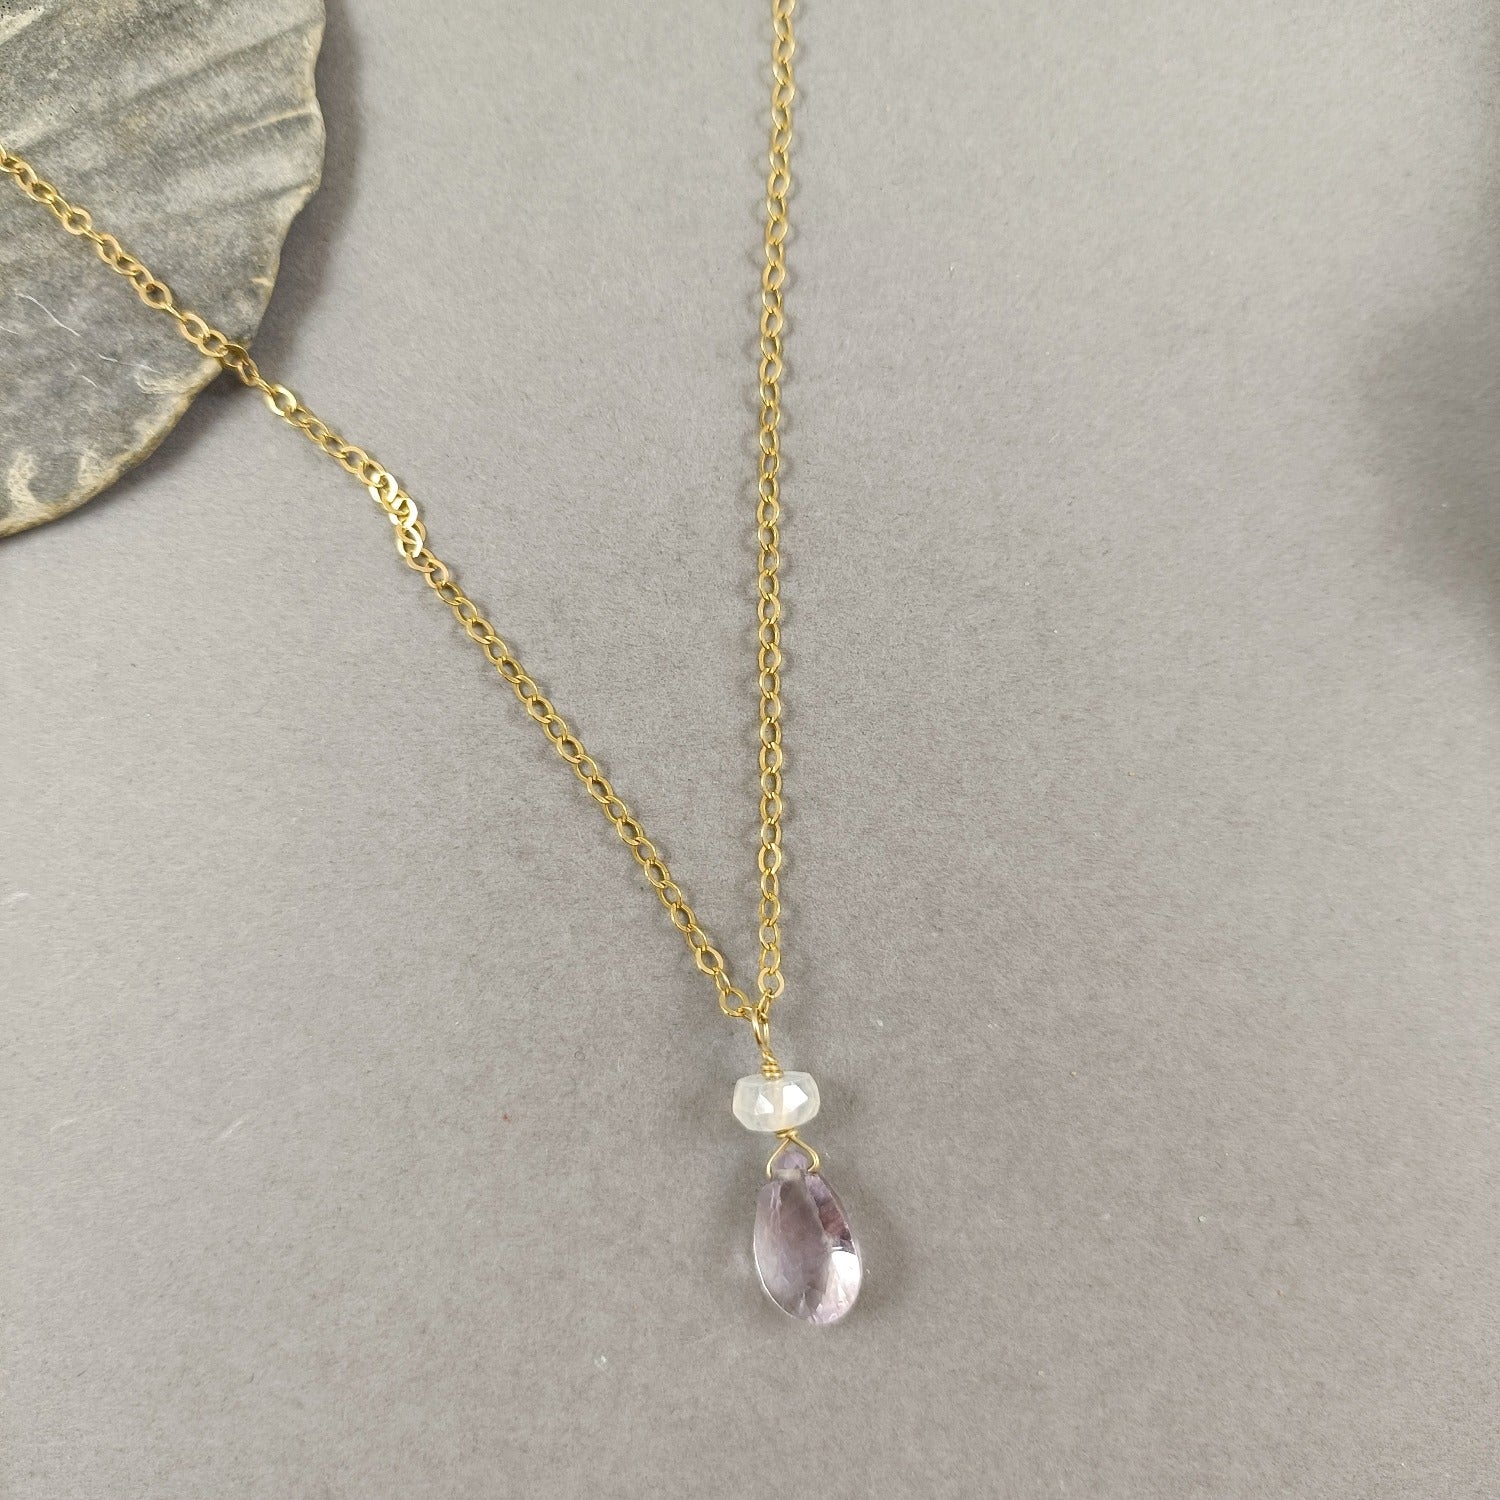 Pink Amethyst Necklace - Karen Morrison Jewellery